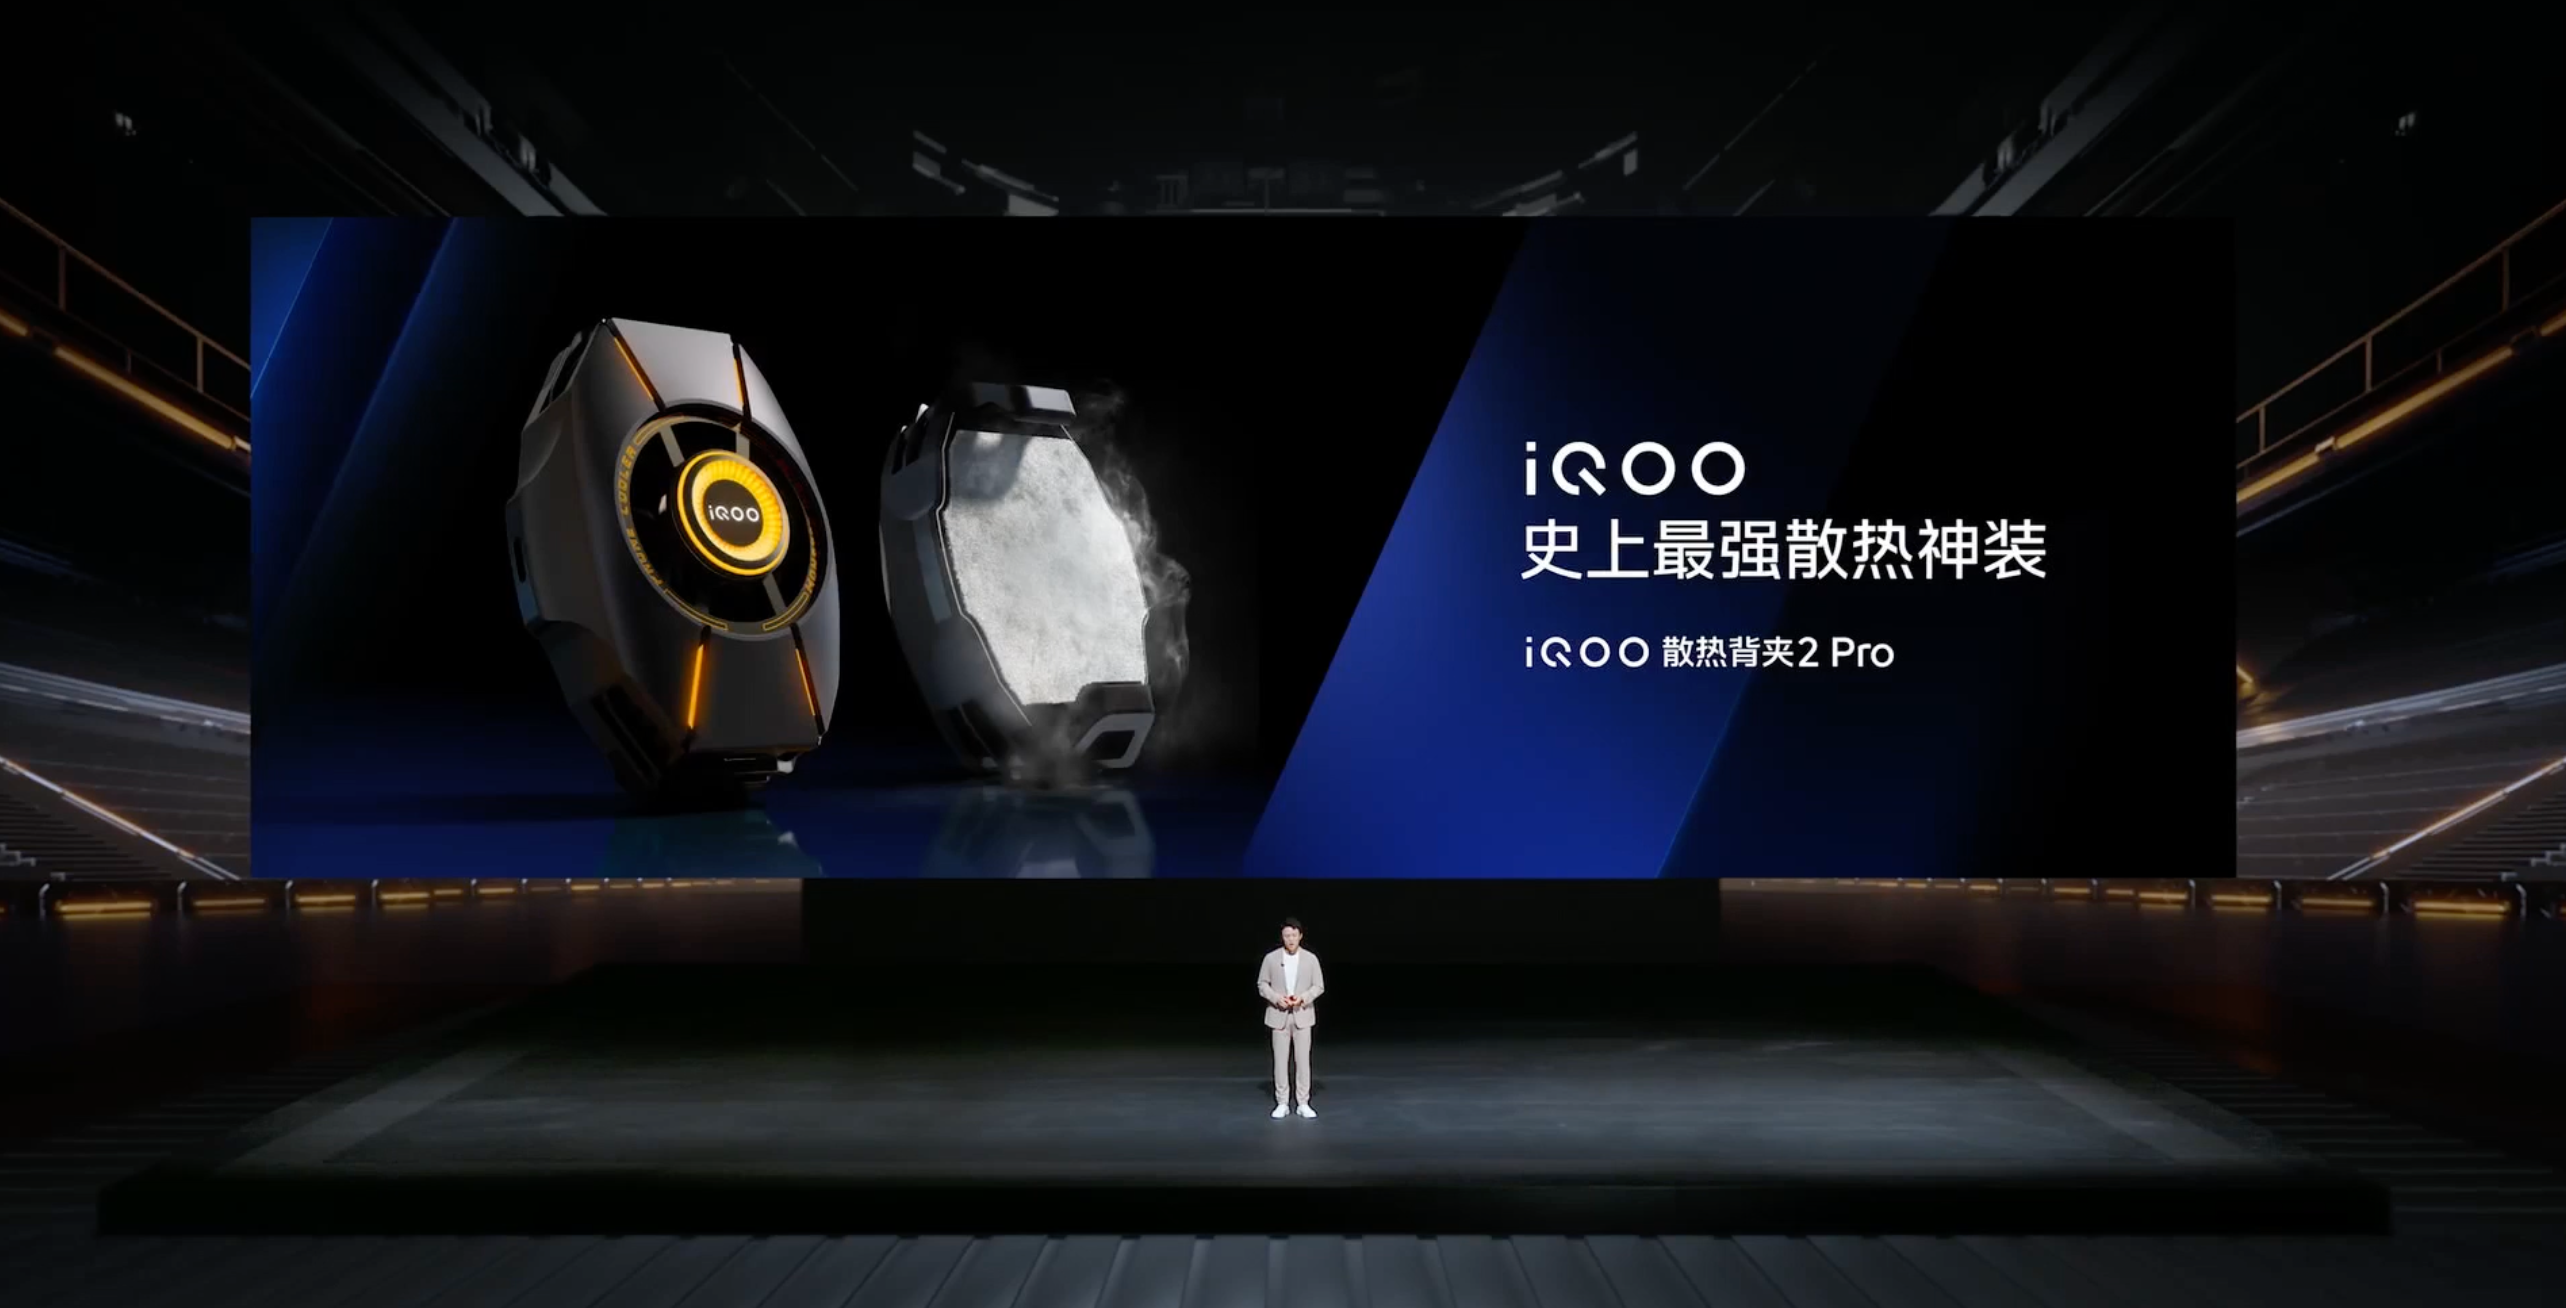 iQOO Neo8系列新品发布会回顾：首发天玑9200+芯片-充电头网